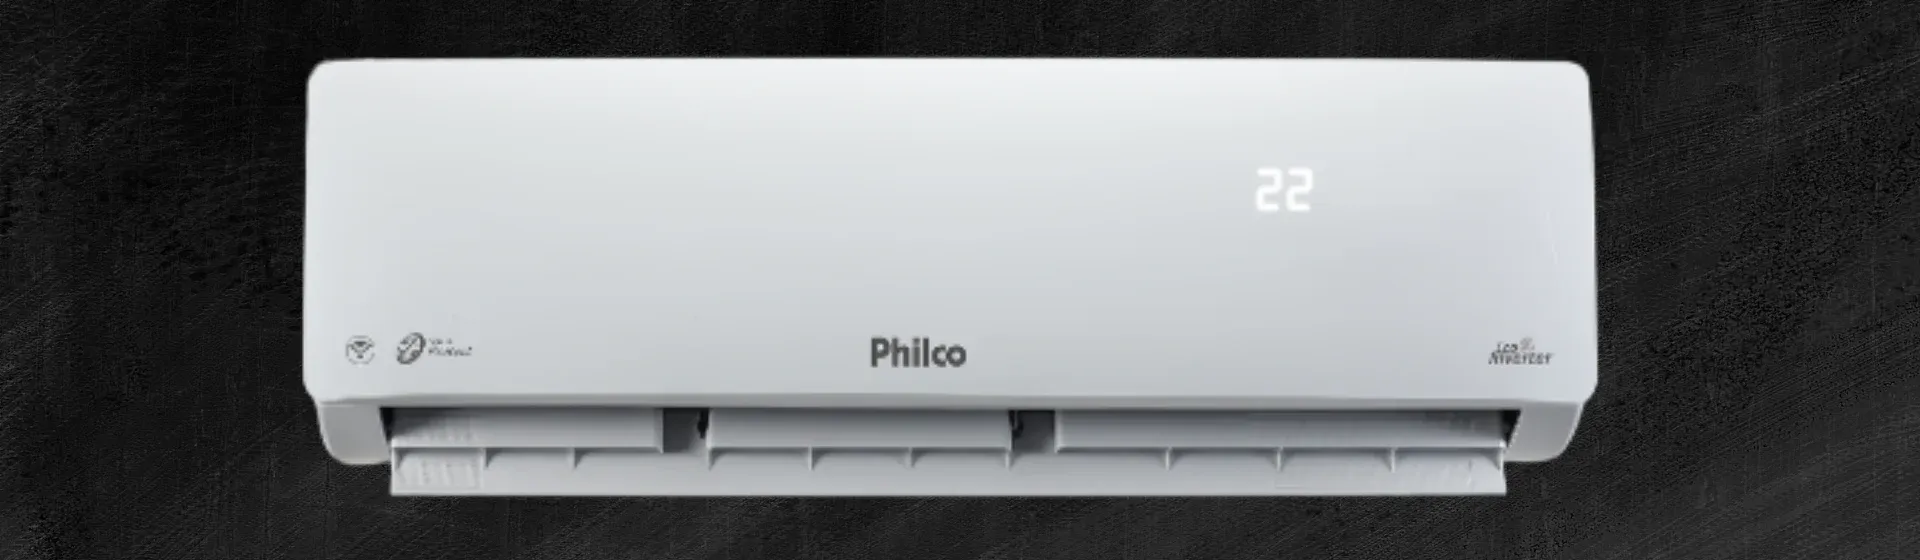 Ar-condicionado Philco Eco Inverter em fundo preto